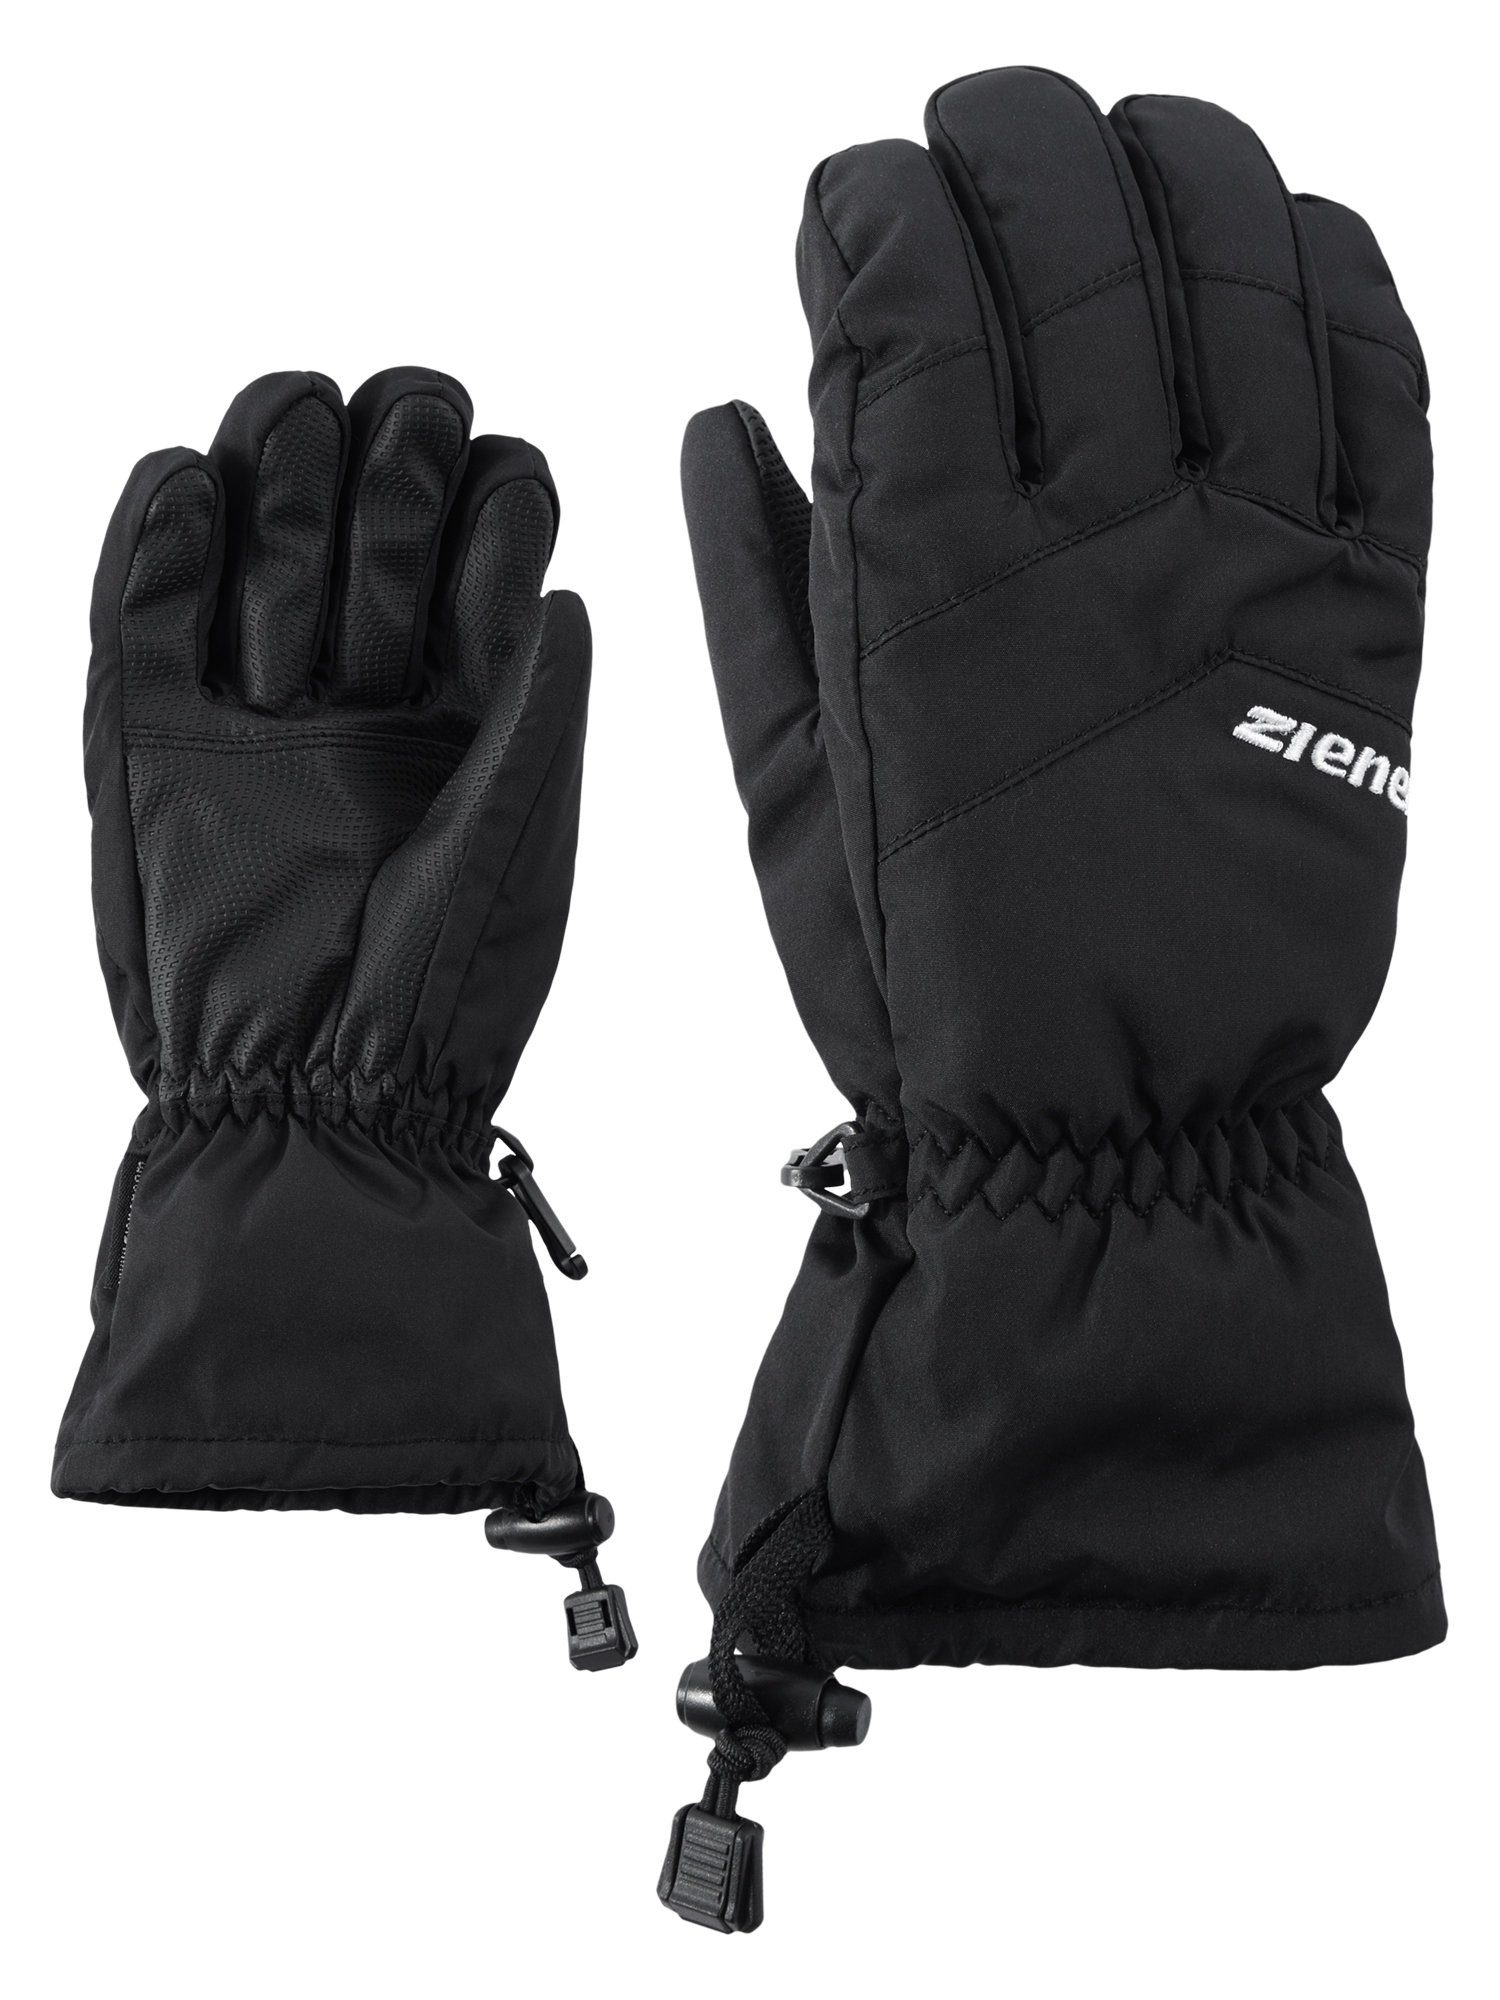 Ziener Lett AsR Glove Junior | | 6 4059749246305 Black 12 